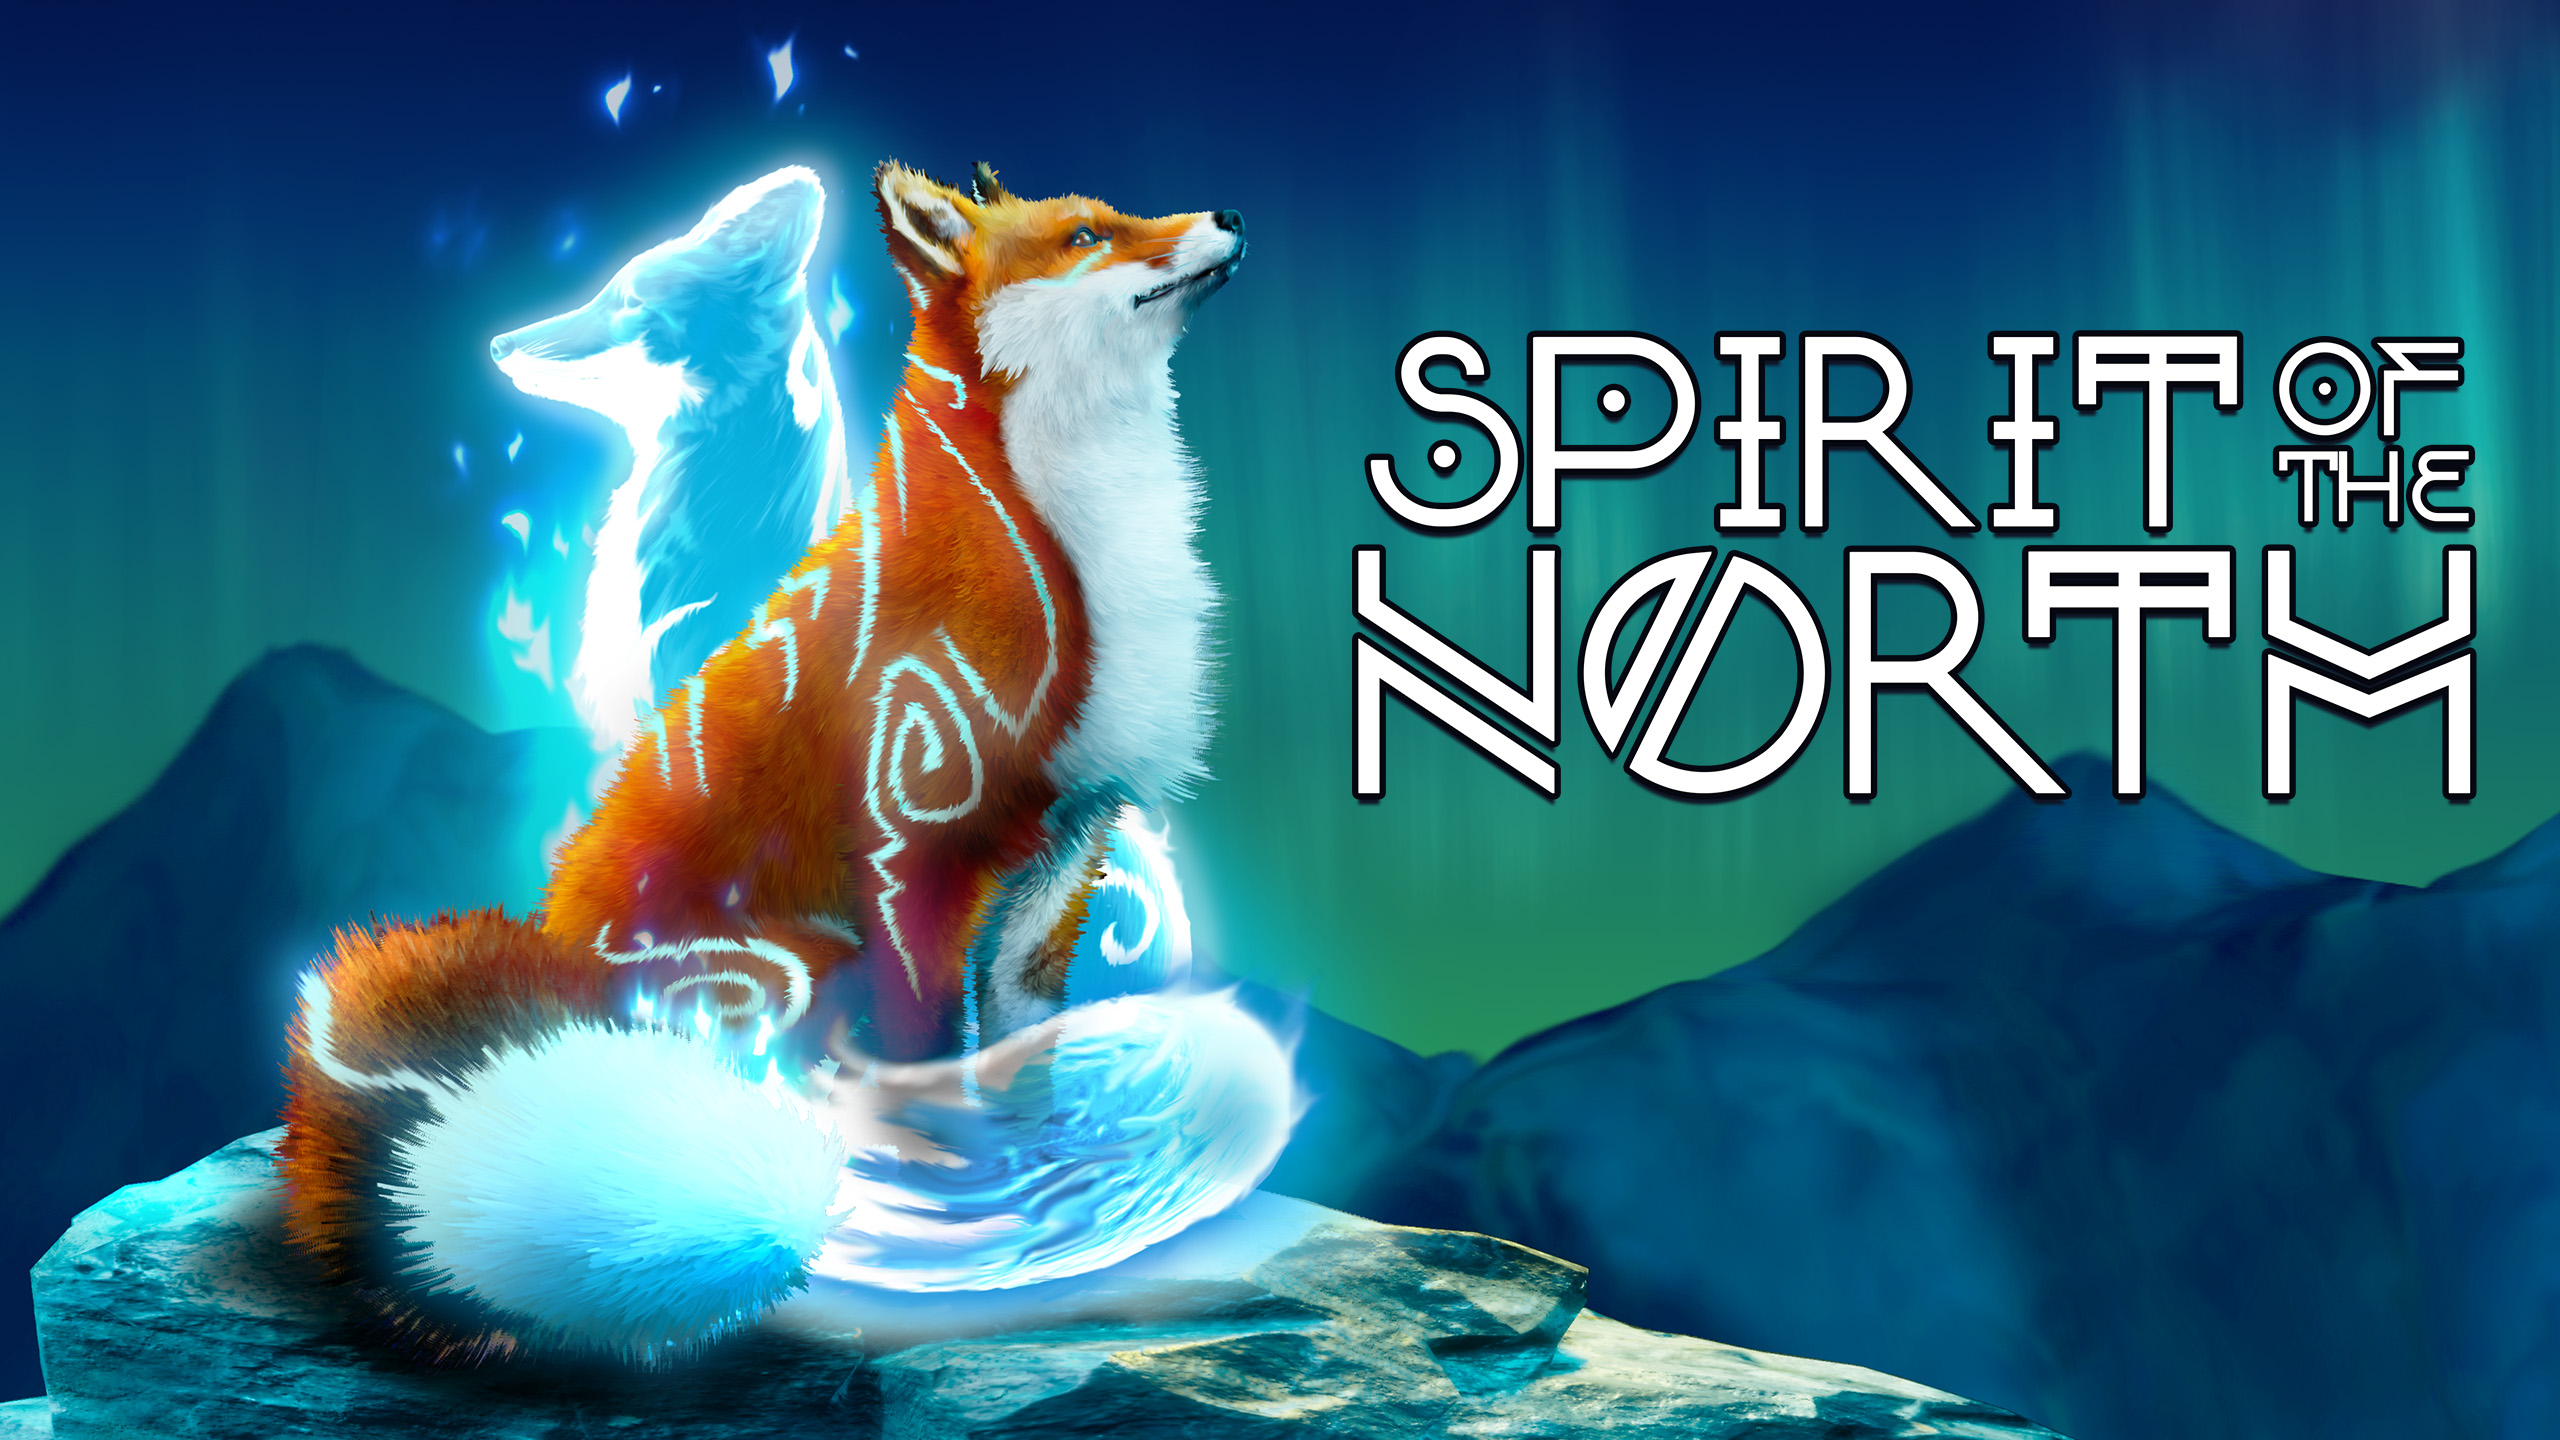 Στις 15 Σεπτεμβρίου, οι χρήστες του Epic Games Store θα μπορούν να διεκδικήσουν δύο εντελώς δωρεάν indie παιχνίδια, το Spirit of the North και το The Captain.